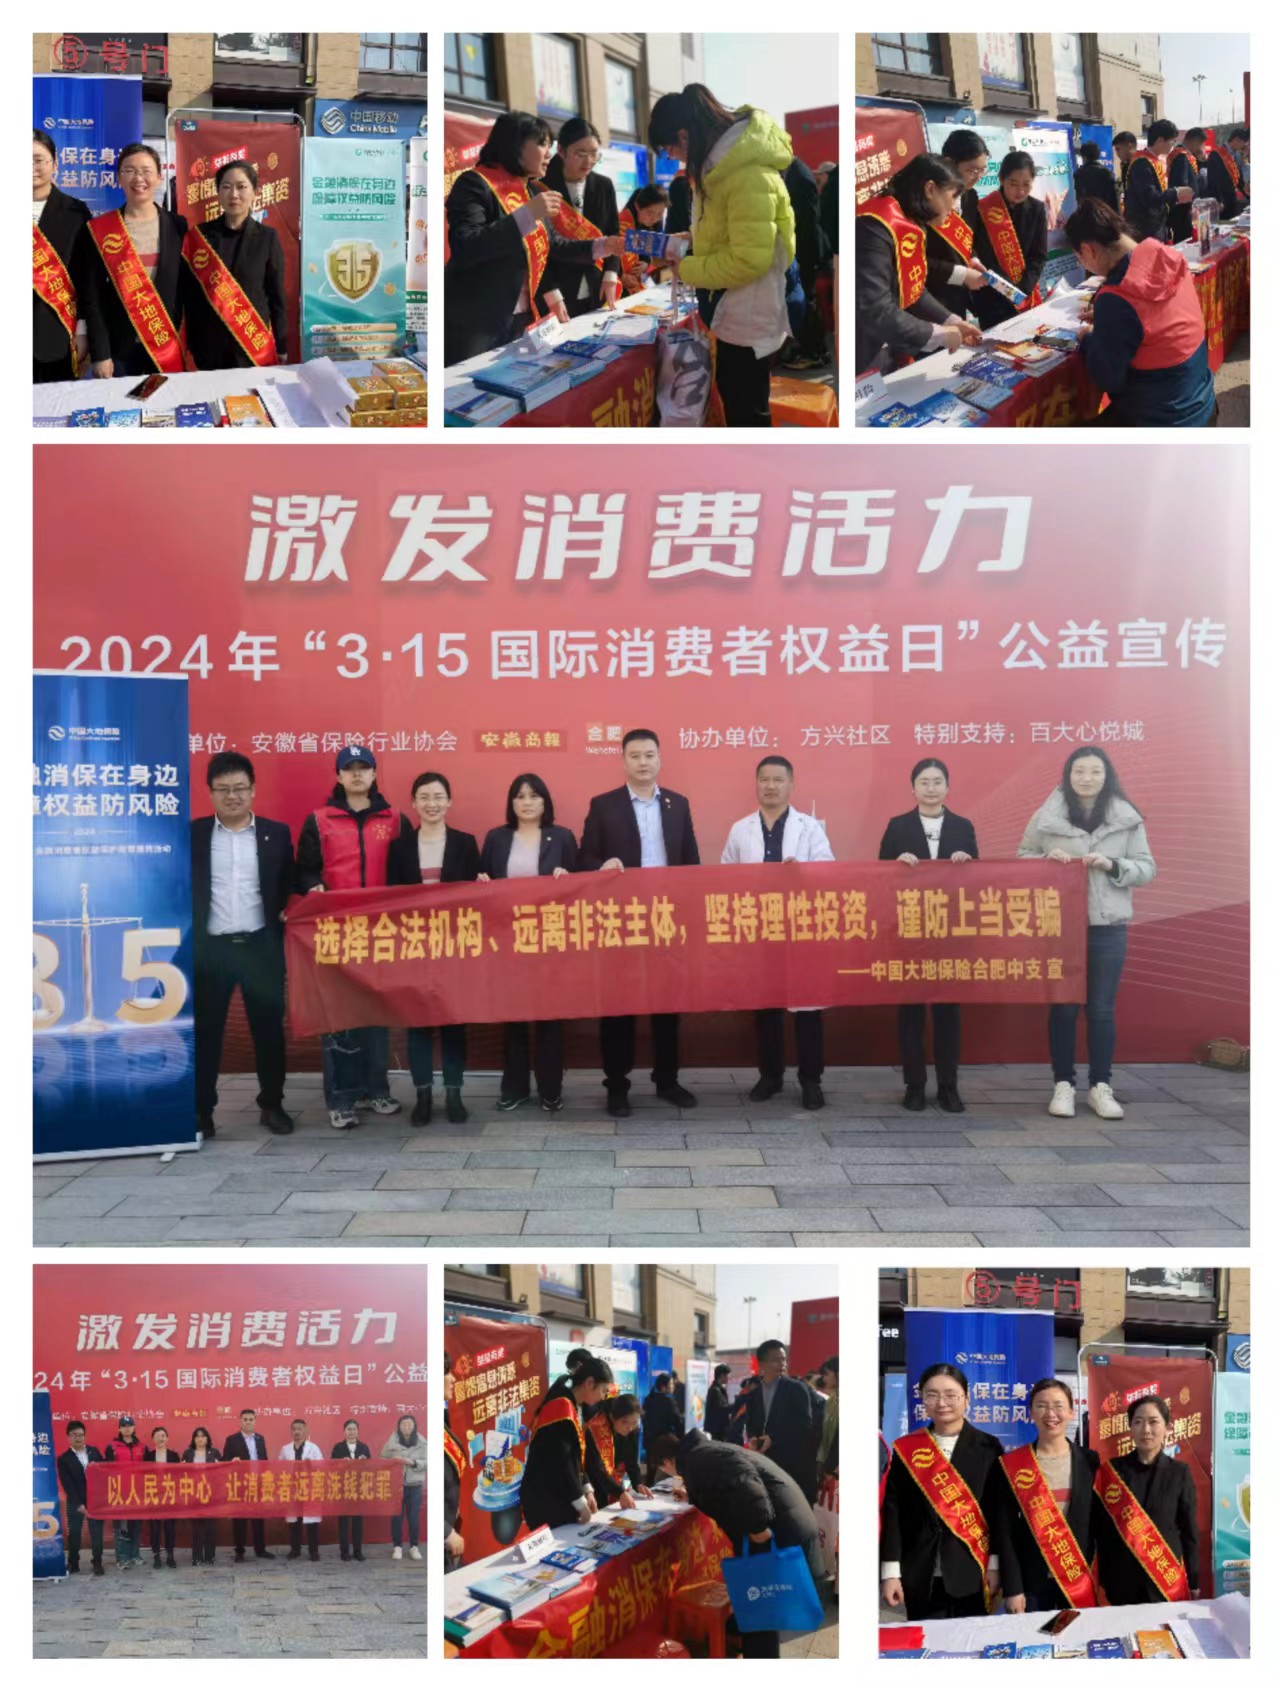 中国大地保险合肥中心支公司参加“315”国际消费者权益日宣传活动 